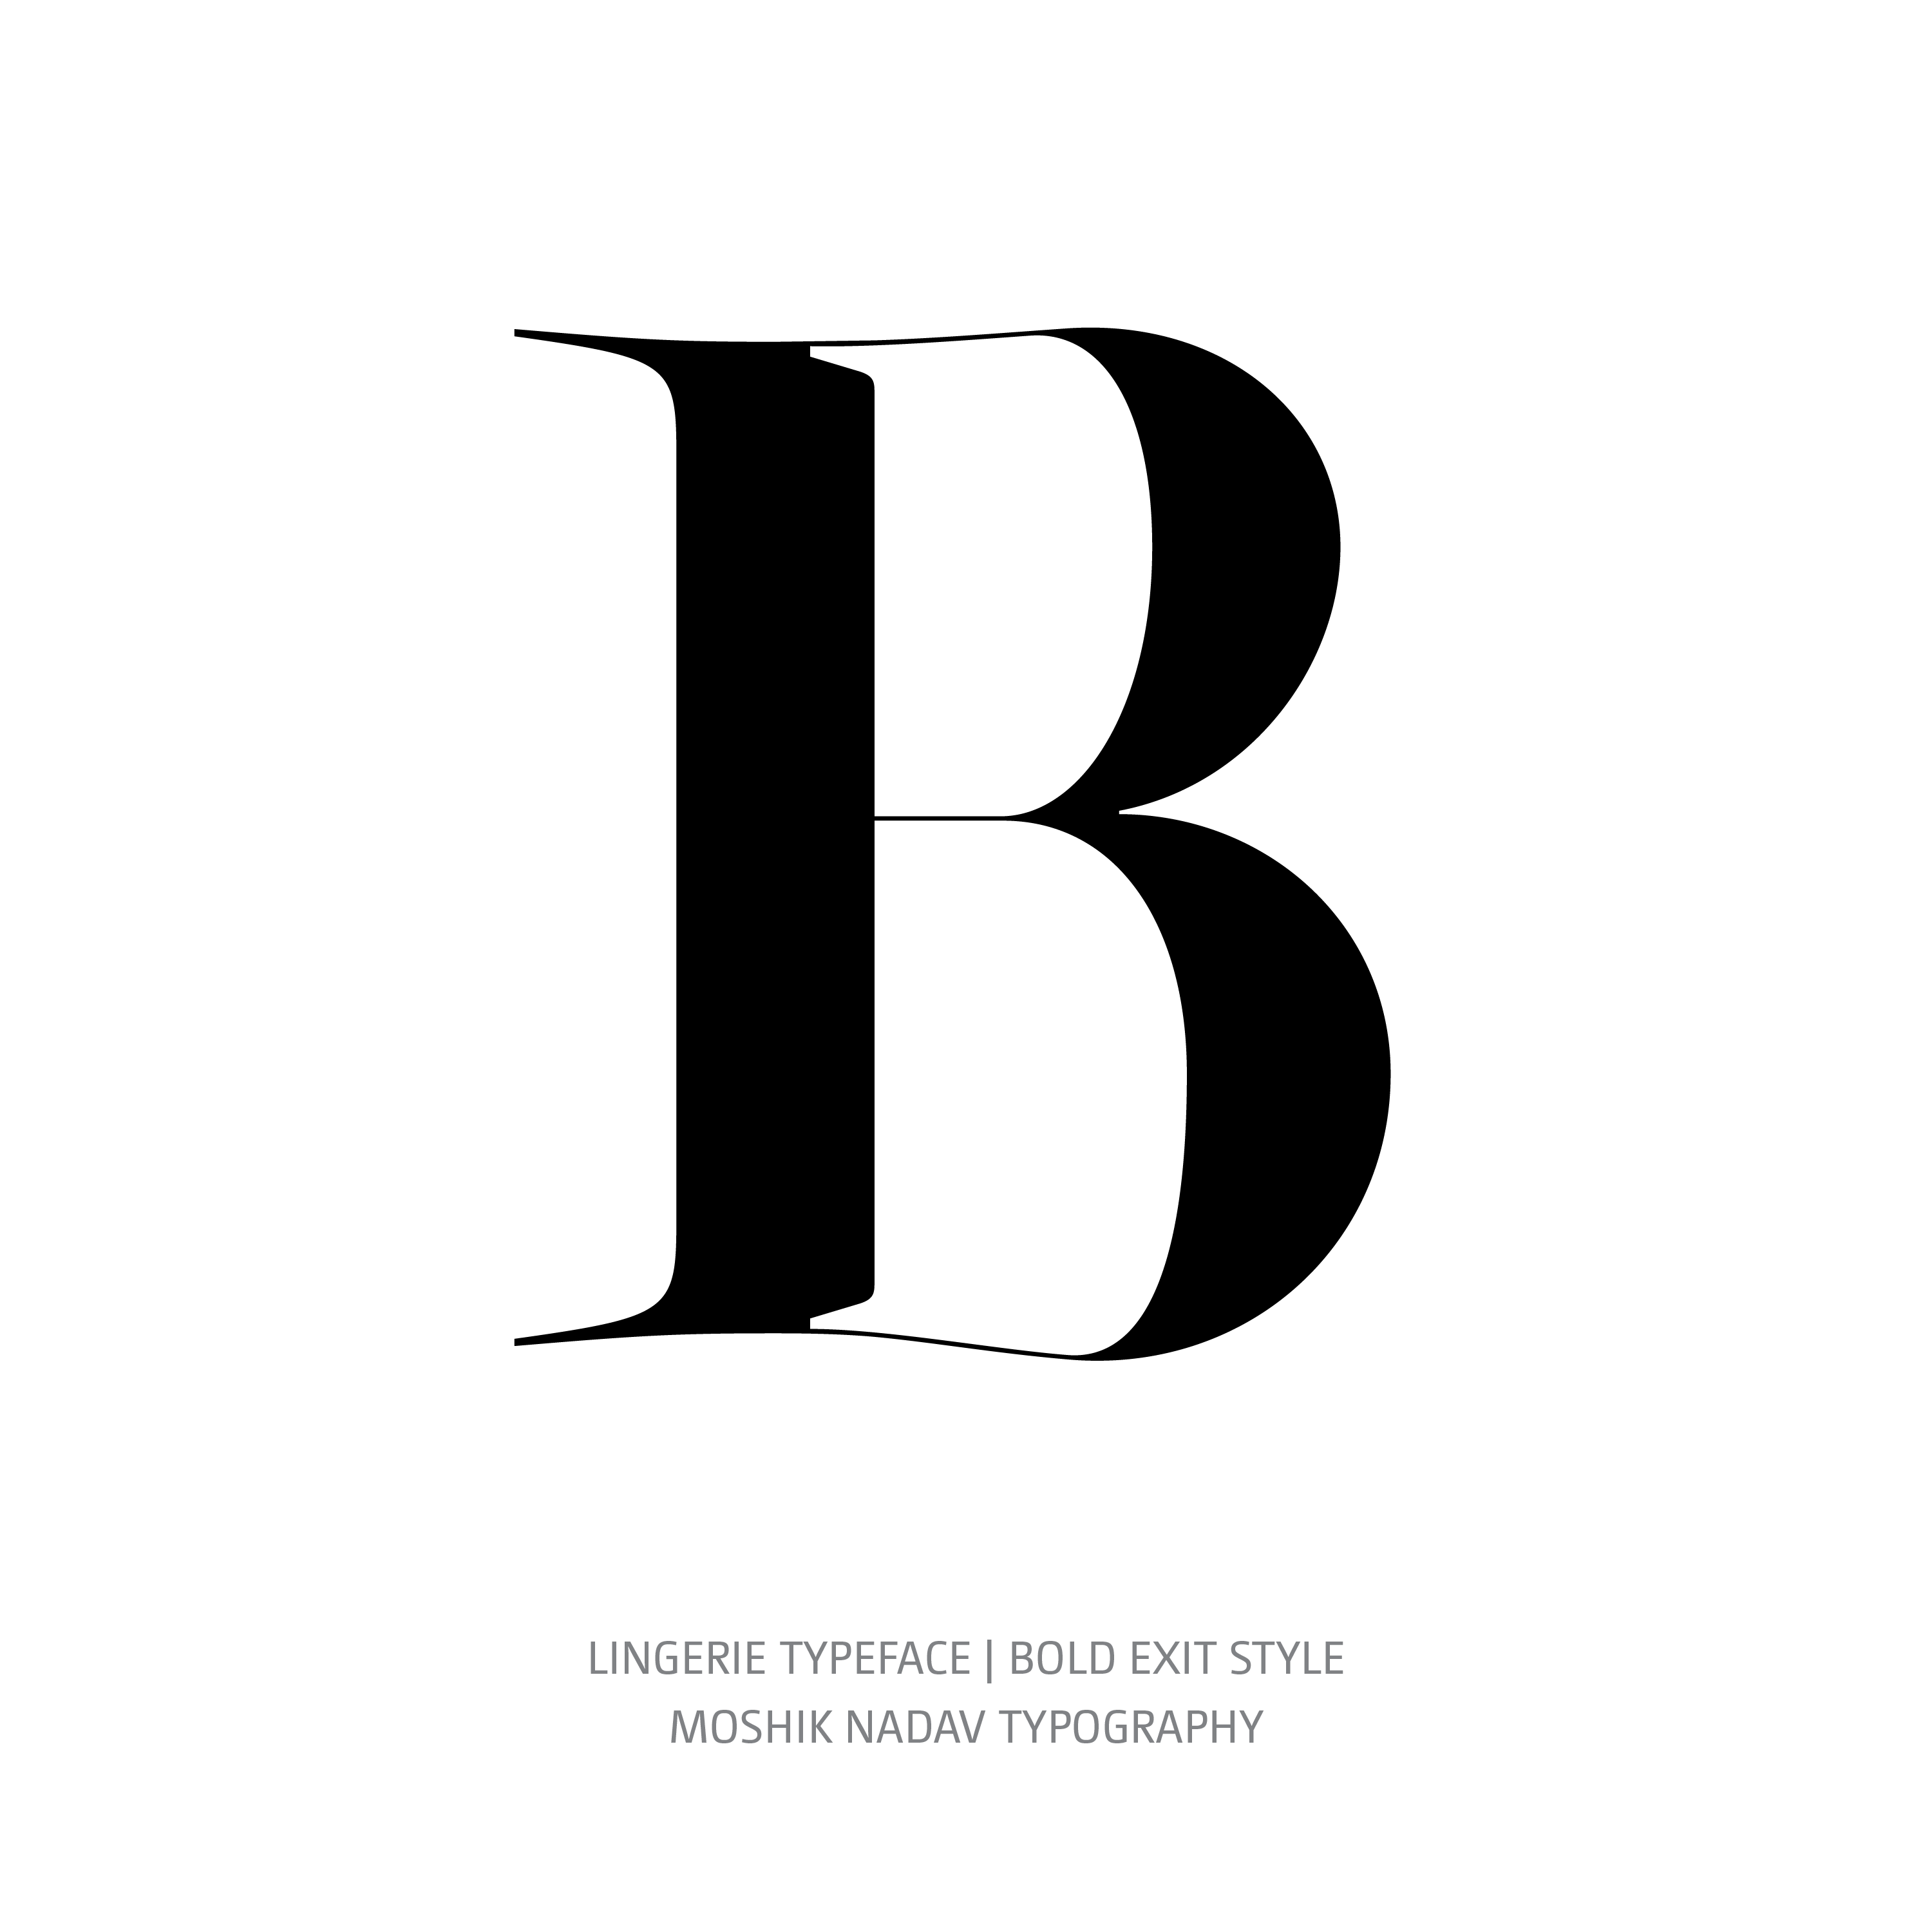 Lingerie Typeface Bold Exit B